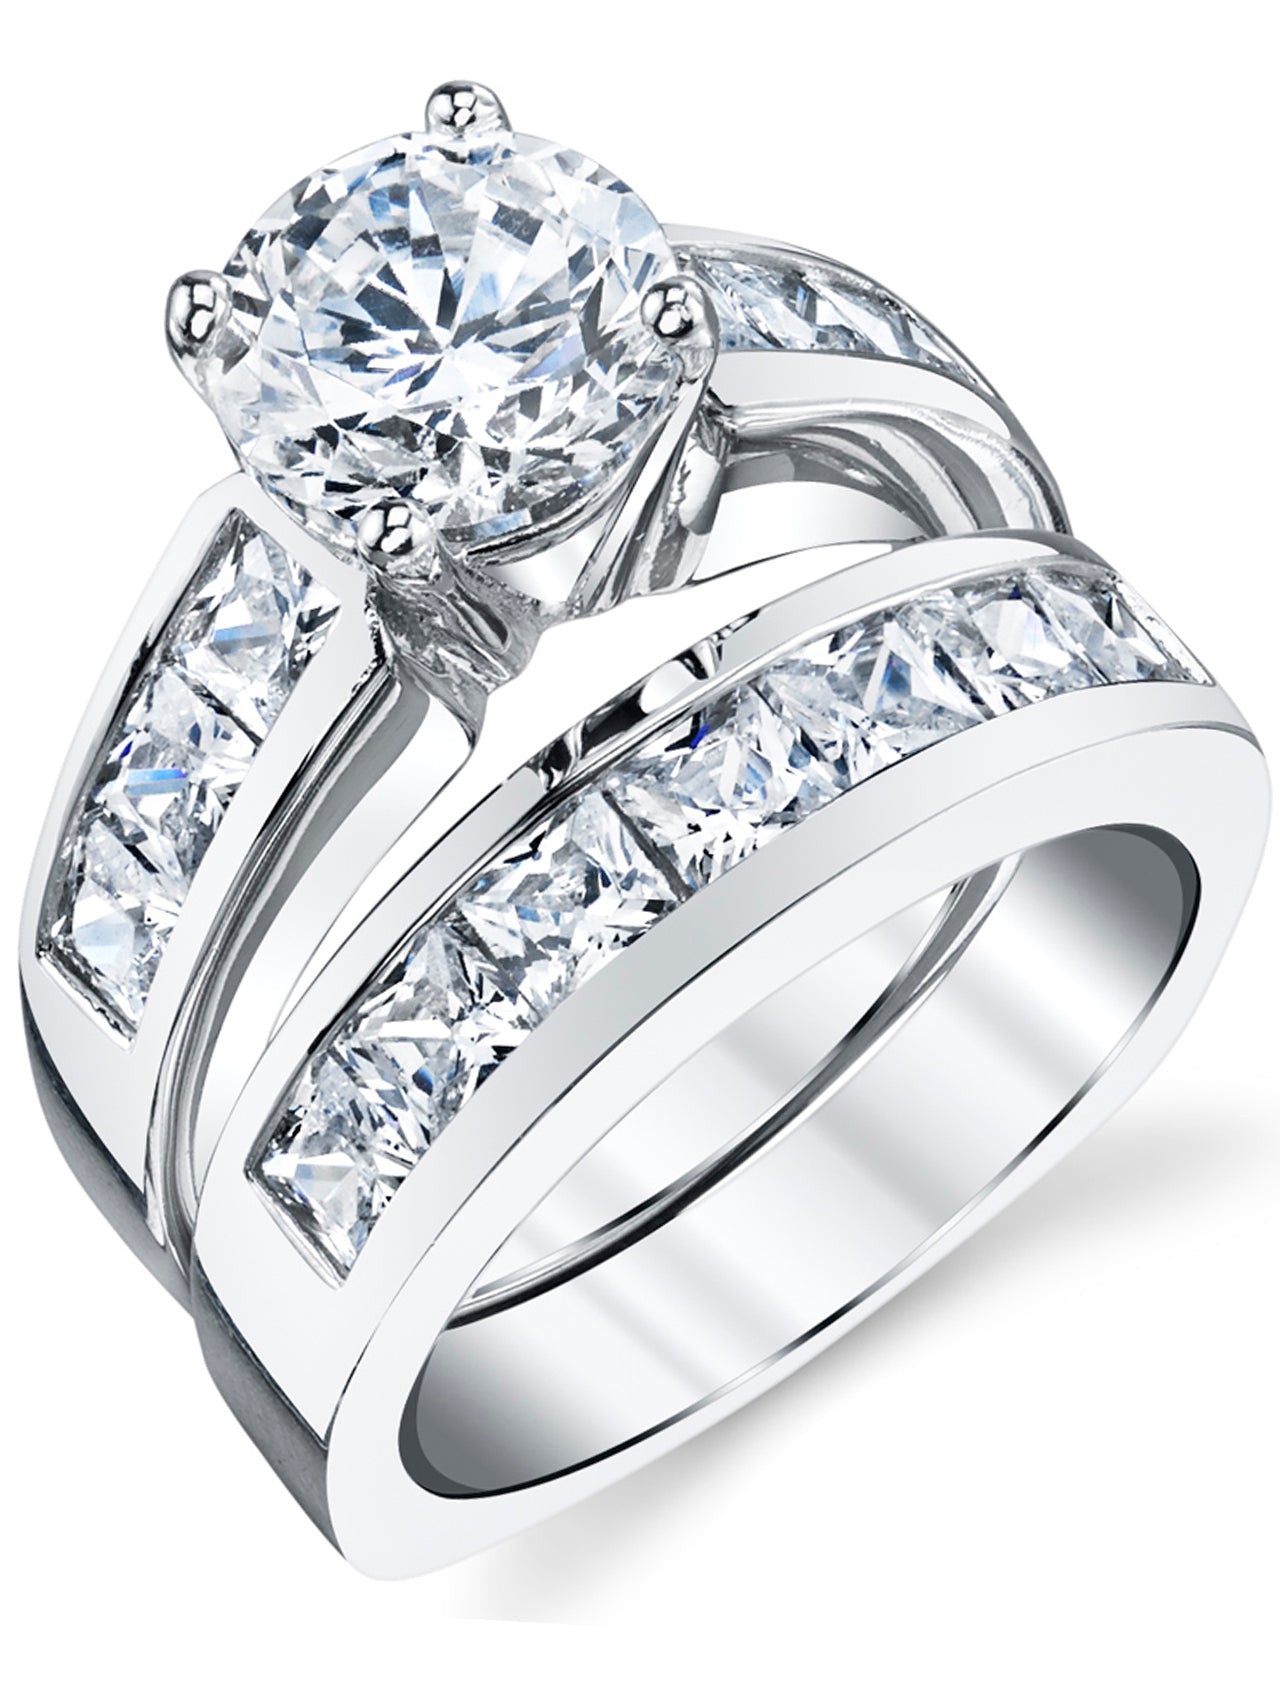 2.25 Ctw Wedding Ring Set. Sterling Silver Wedding Rings. 1 Carat